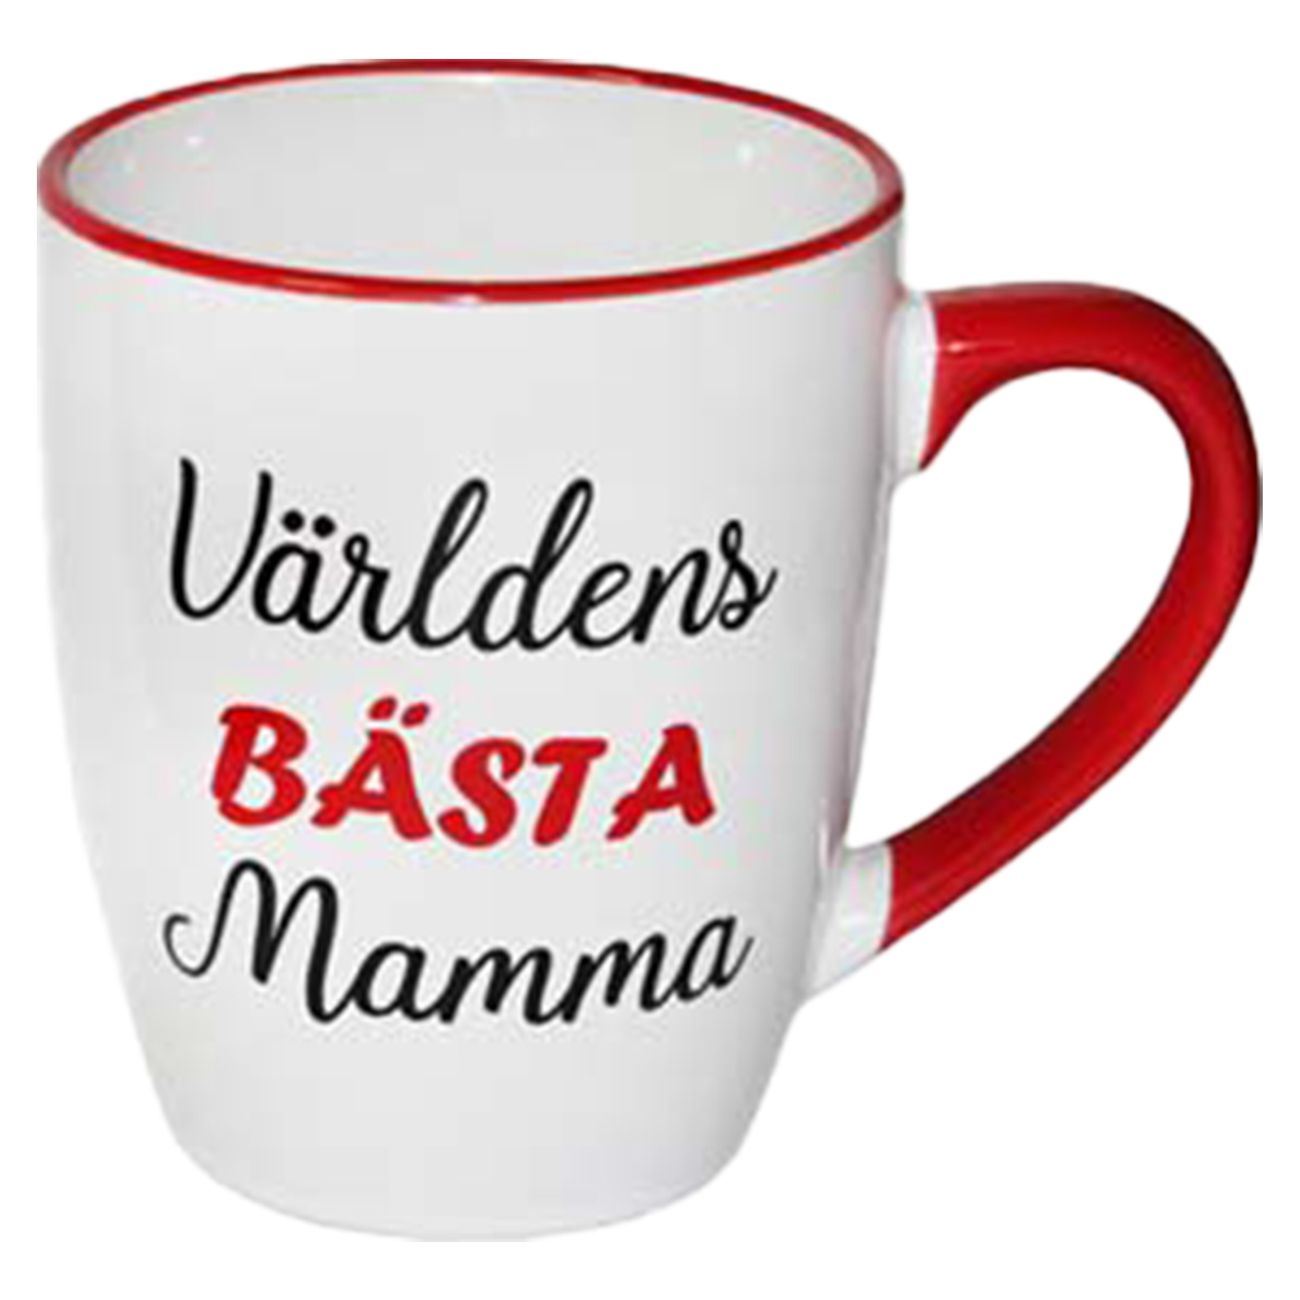 mugg-varldens-basta-mamma-92163-1